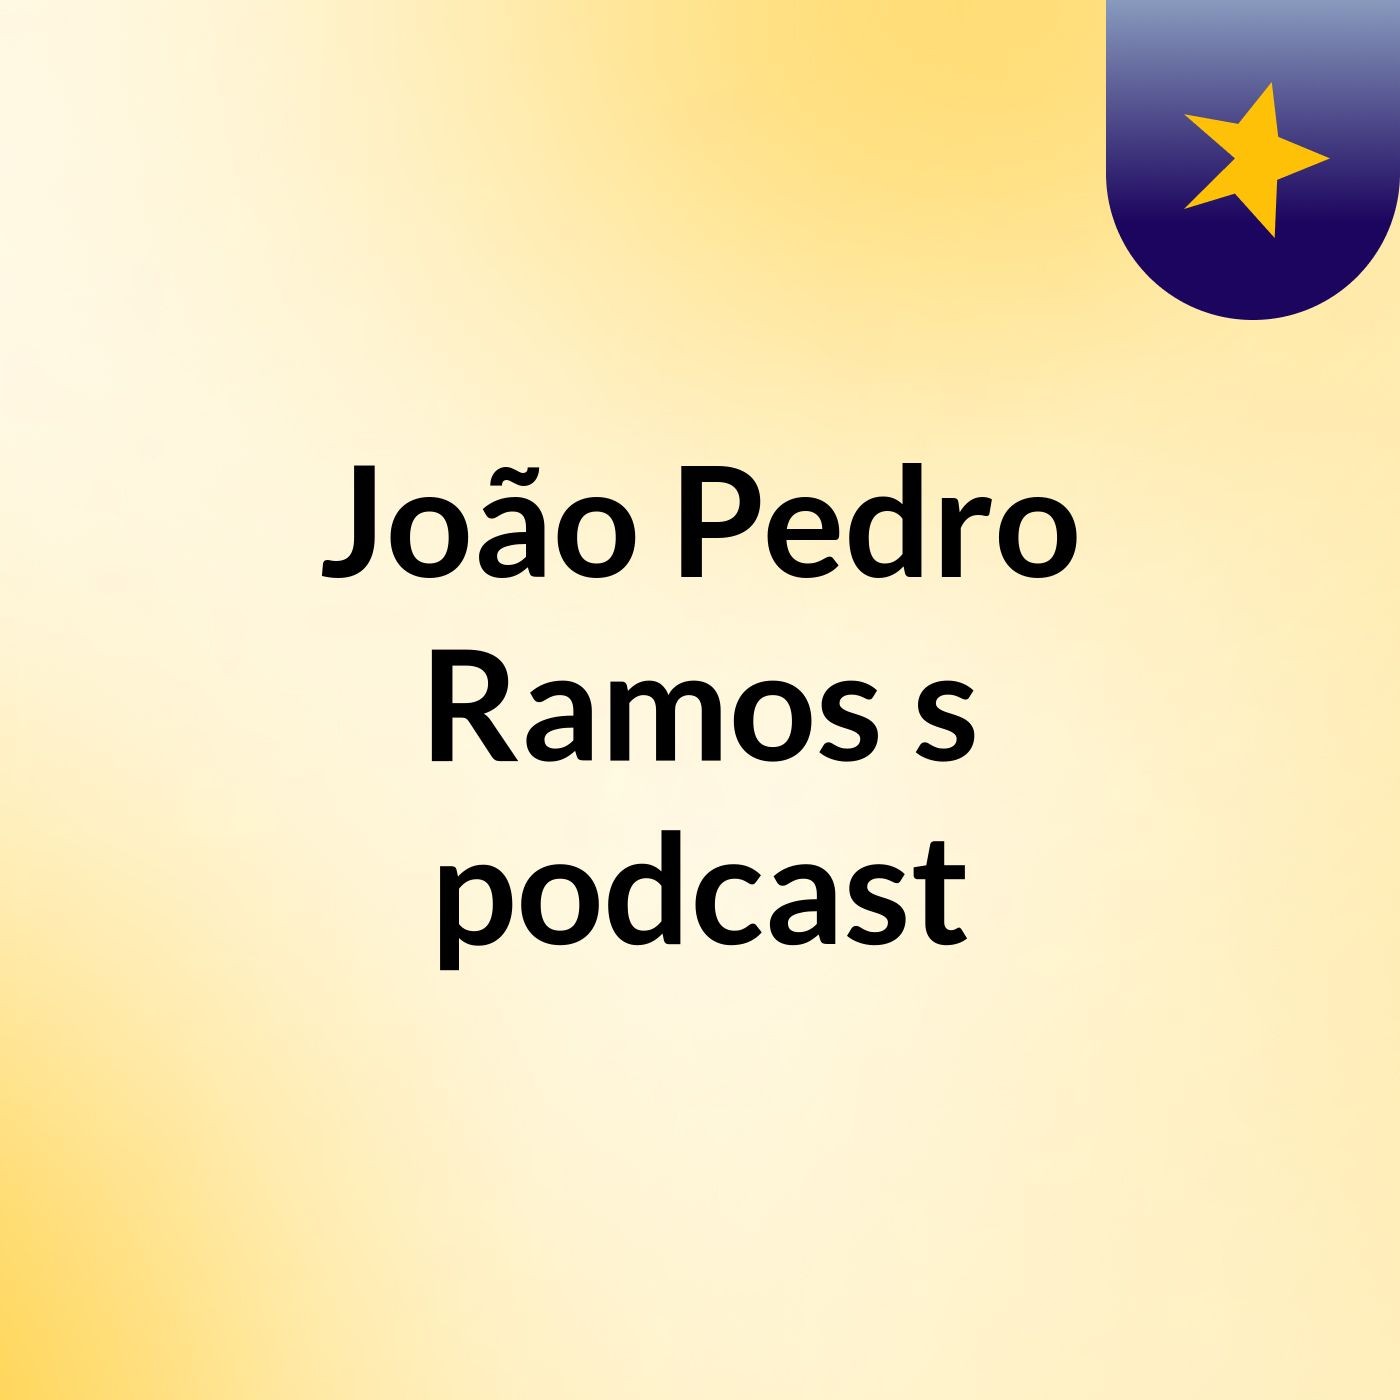 João Pedro Ramos's podcast